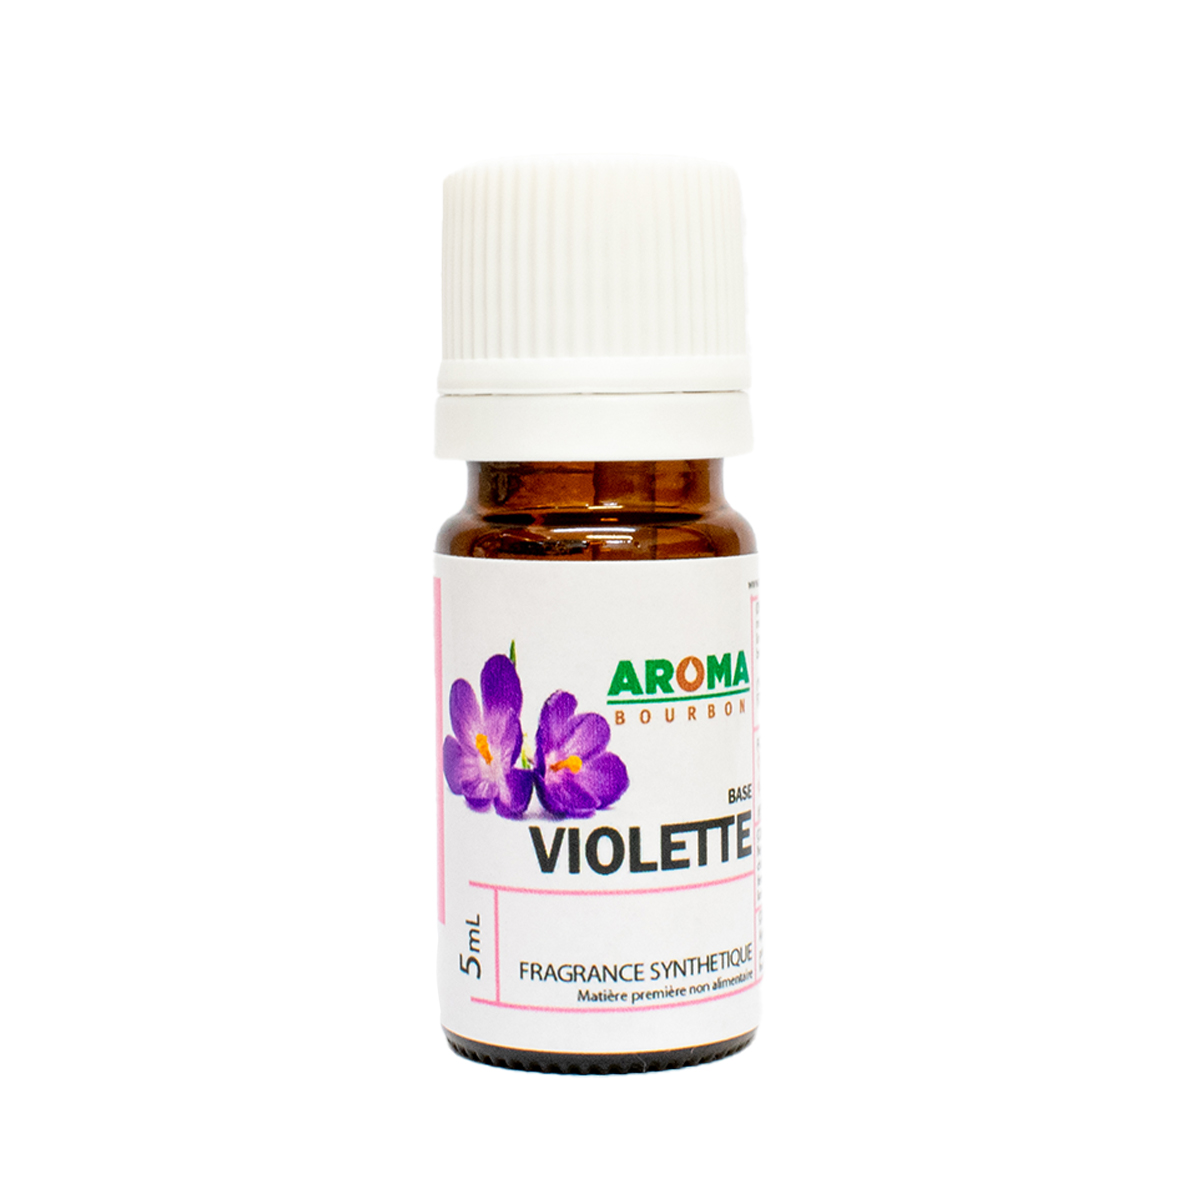 VIOLETTE - Fragrance synthétique